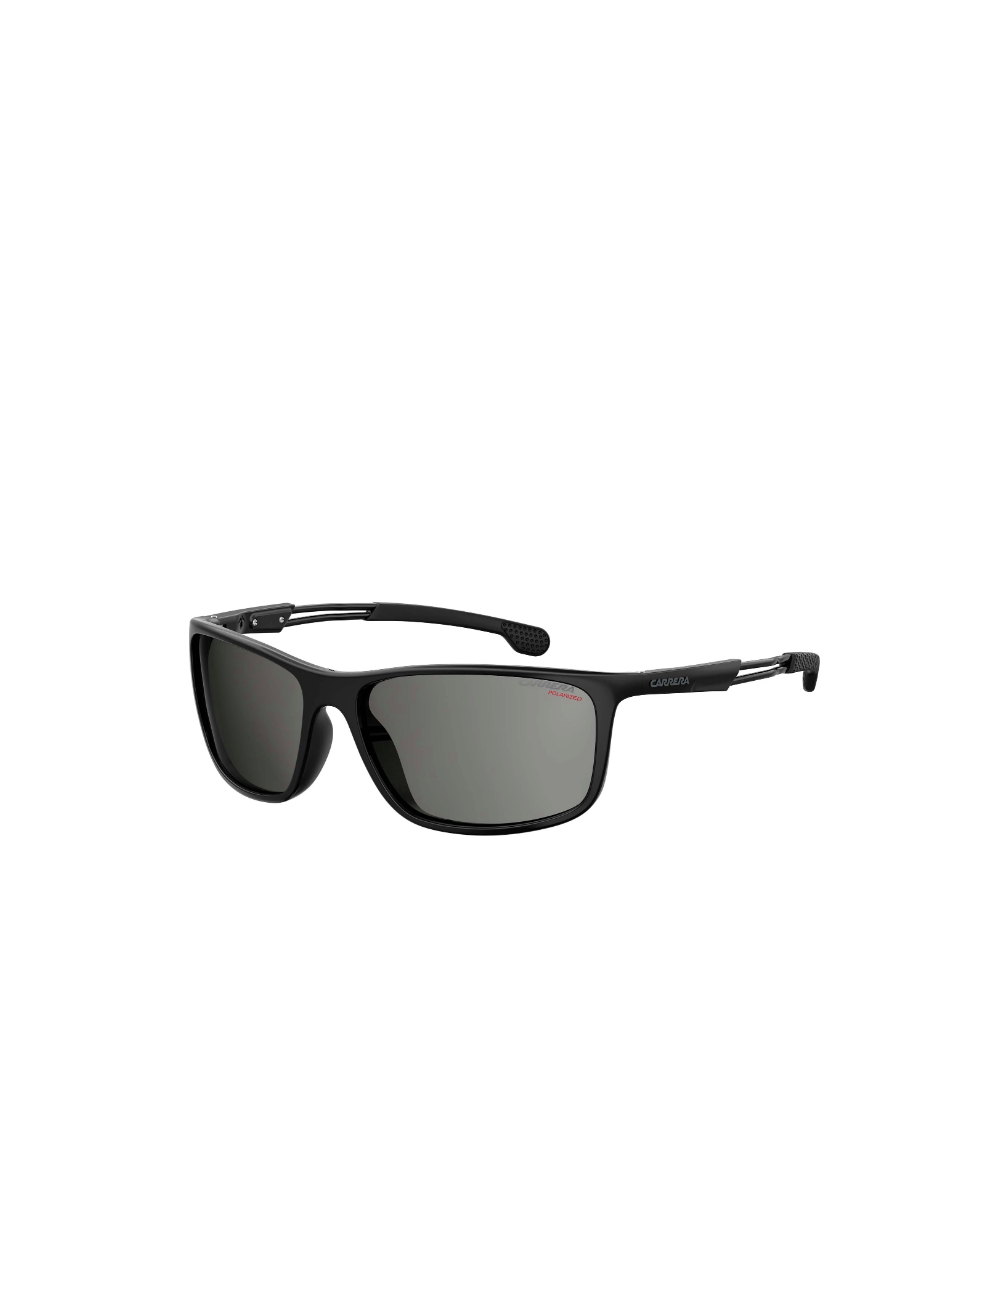 Carrera 4013/S 807 polarized sunglasses for men - Ottica Mauro